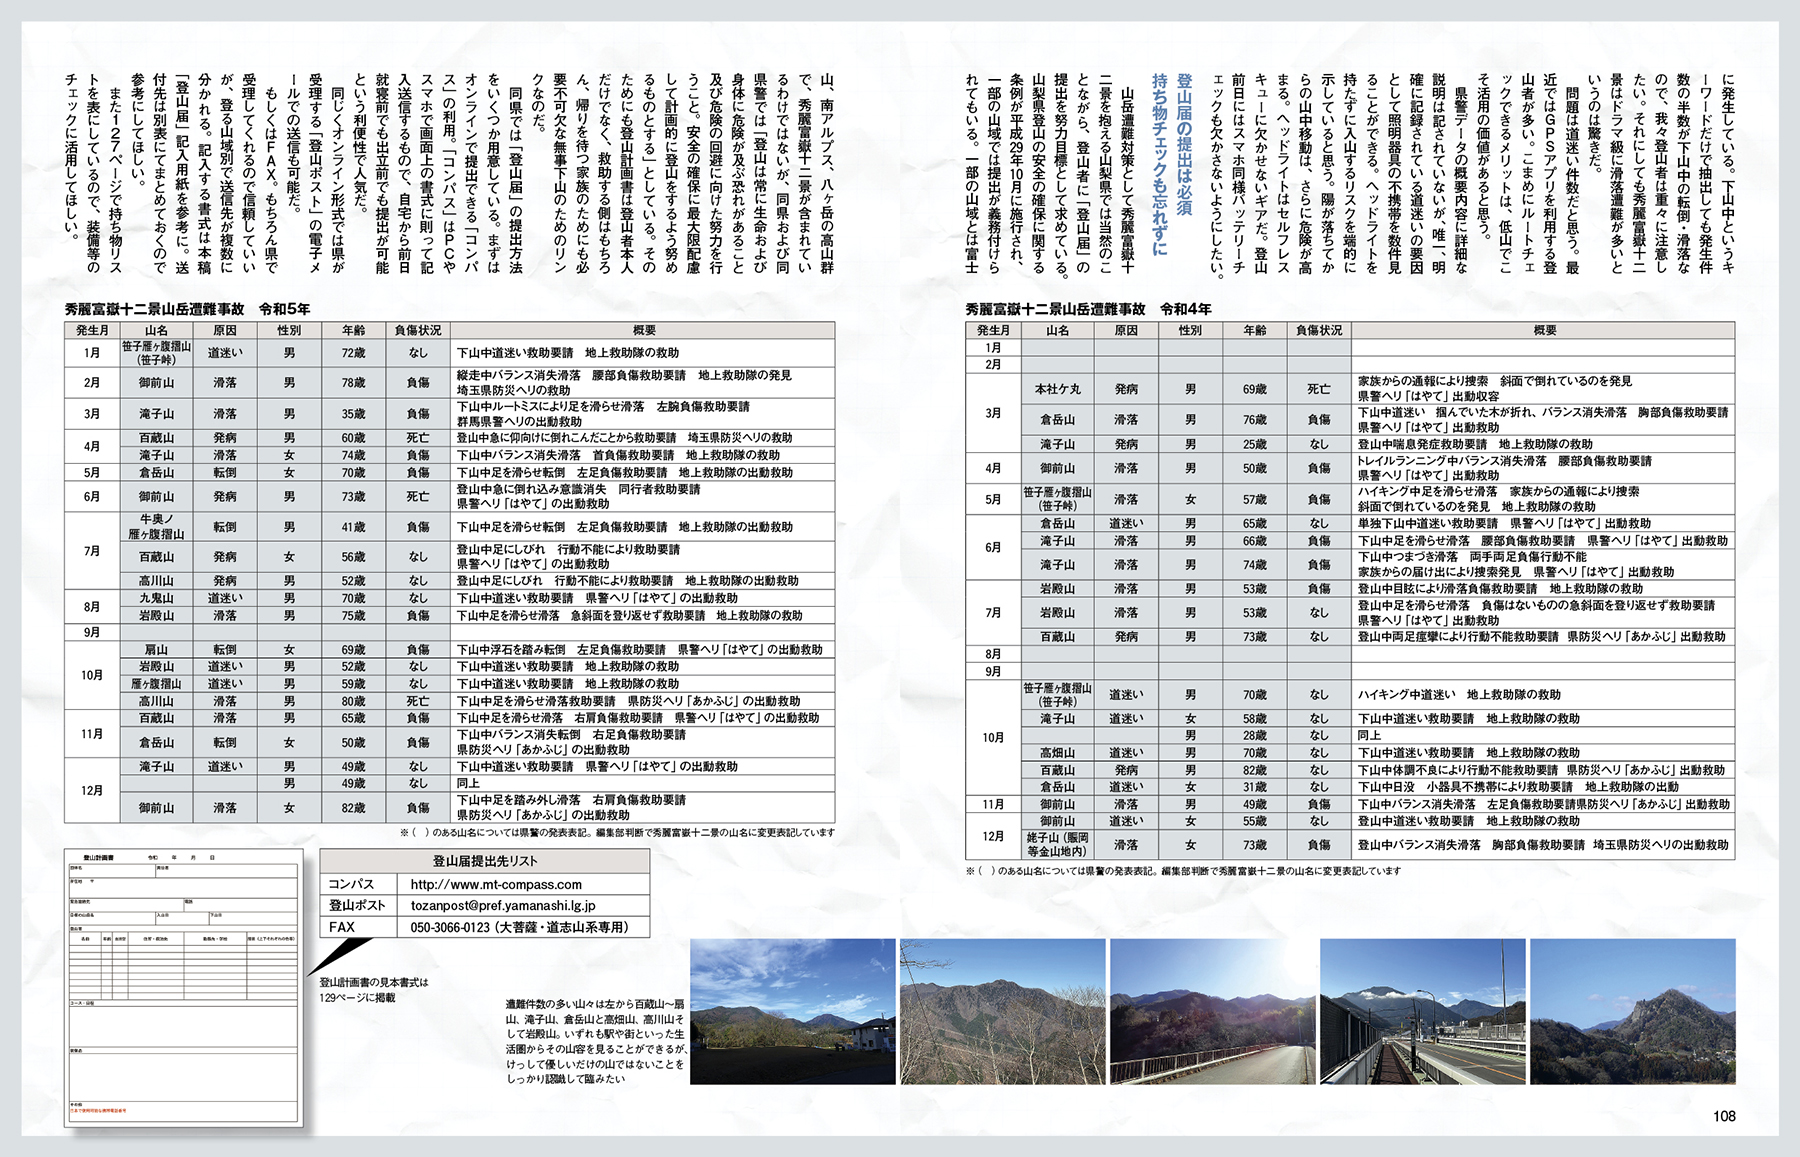 交通タイムス社発行「絶景富士山に会える日帰り低山20」の特集記事